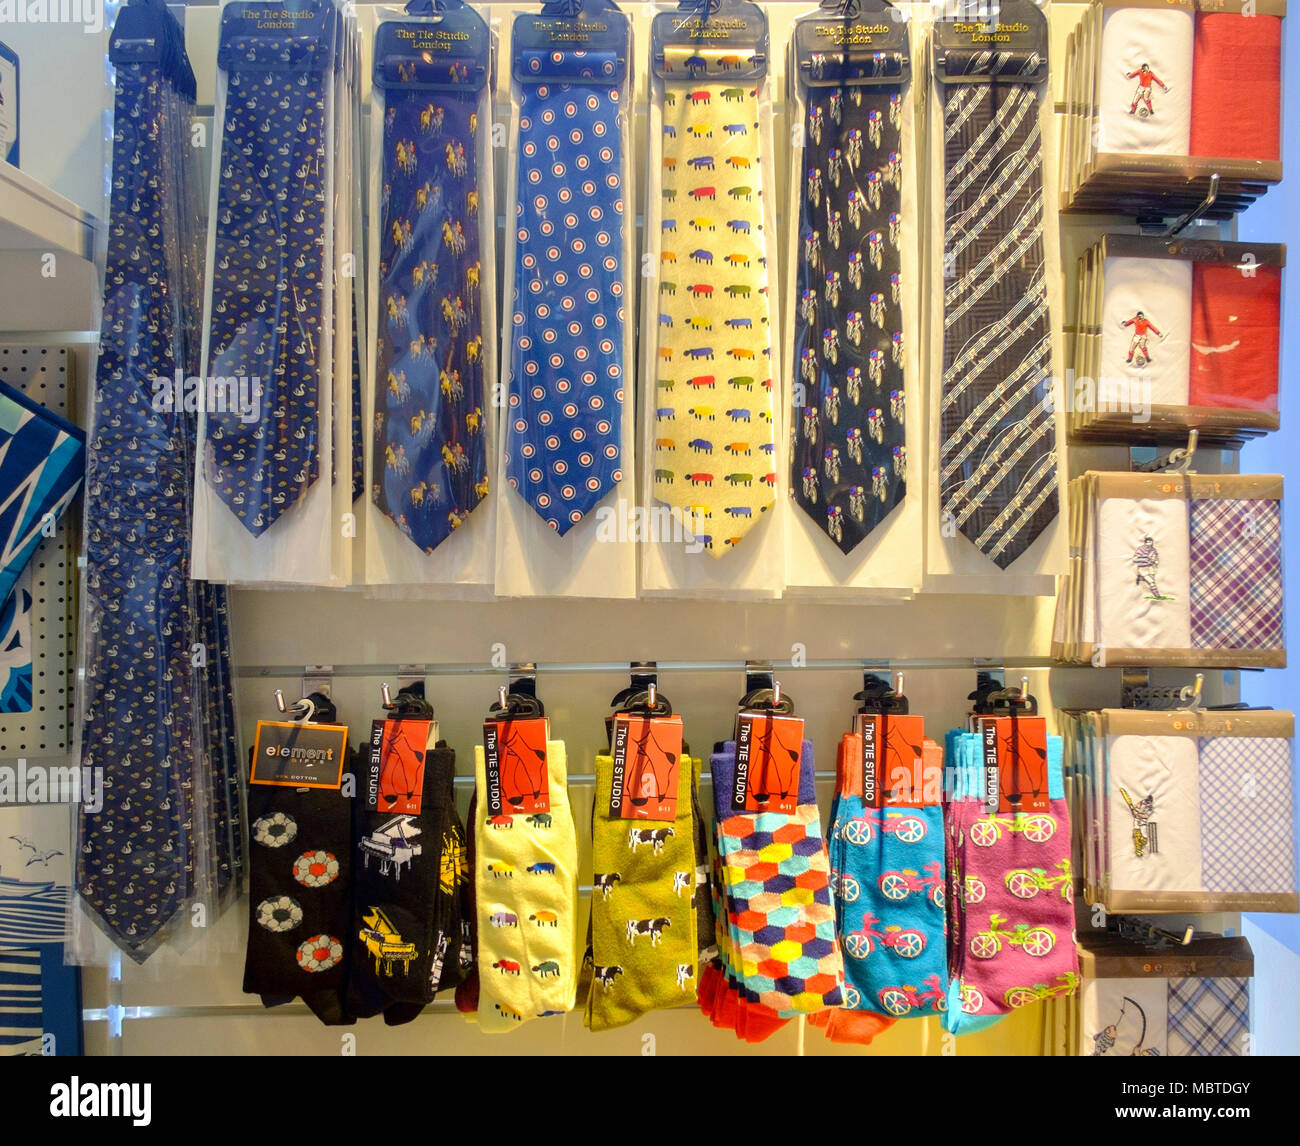 Cadeaux afficher de nouveauté et masculin de cravates, mouchoirs et chaussettes Banque D'Images